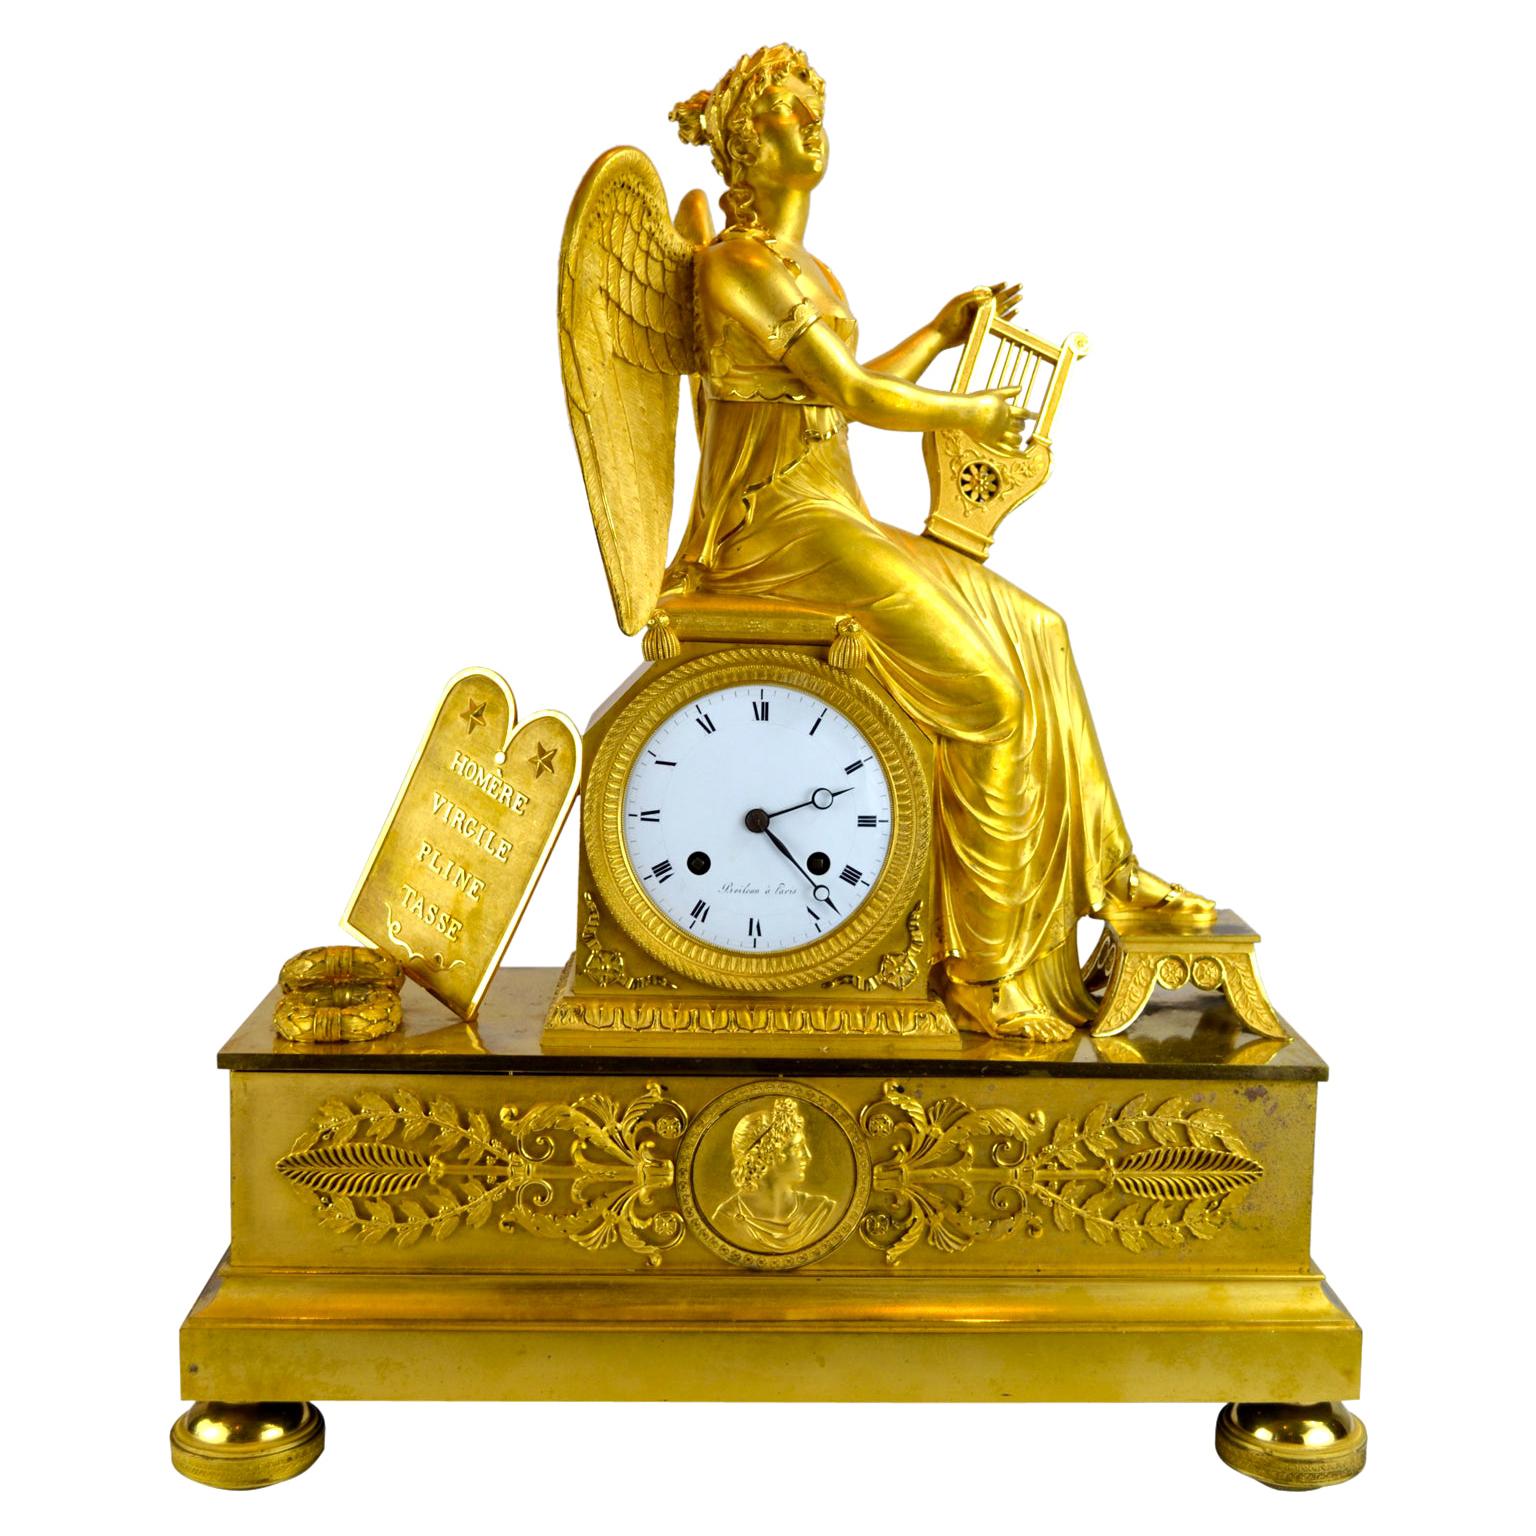 Eine Allegorische vergoldete Bronze Französische Empire Uhr Darstellung Clio, die griechische Muse der Geschichte und Musik. Clio sitzt hier auf dem Uhrensockel und spielt ihre Harfe. Links vom Zifferblatt sind Kränze und eine Tafel mit den Namen